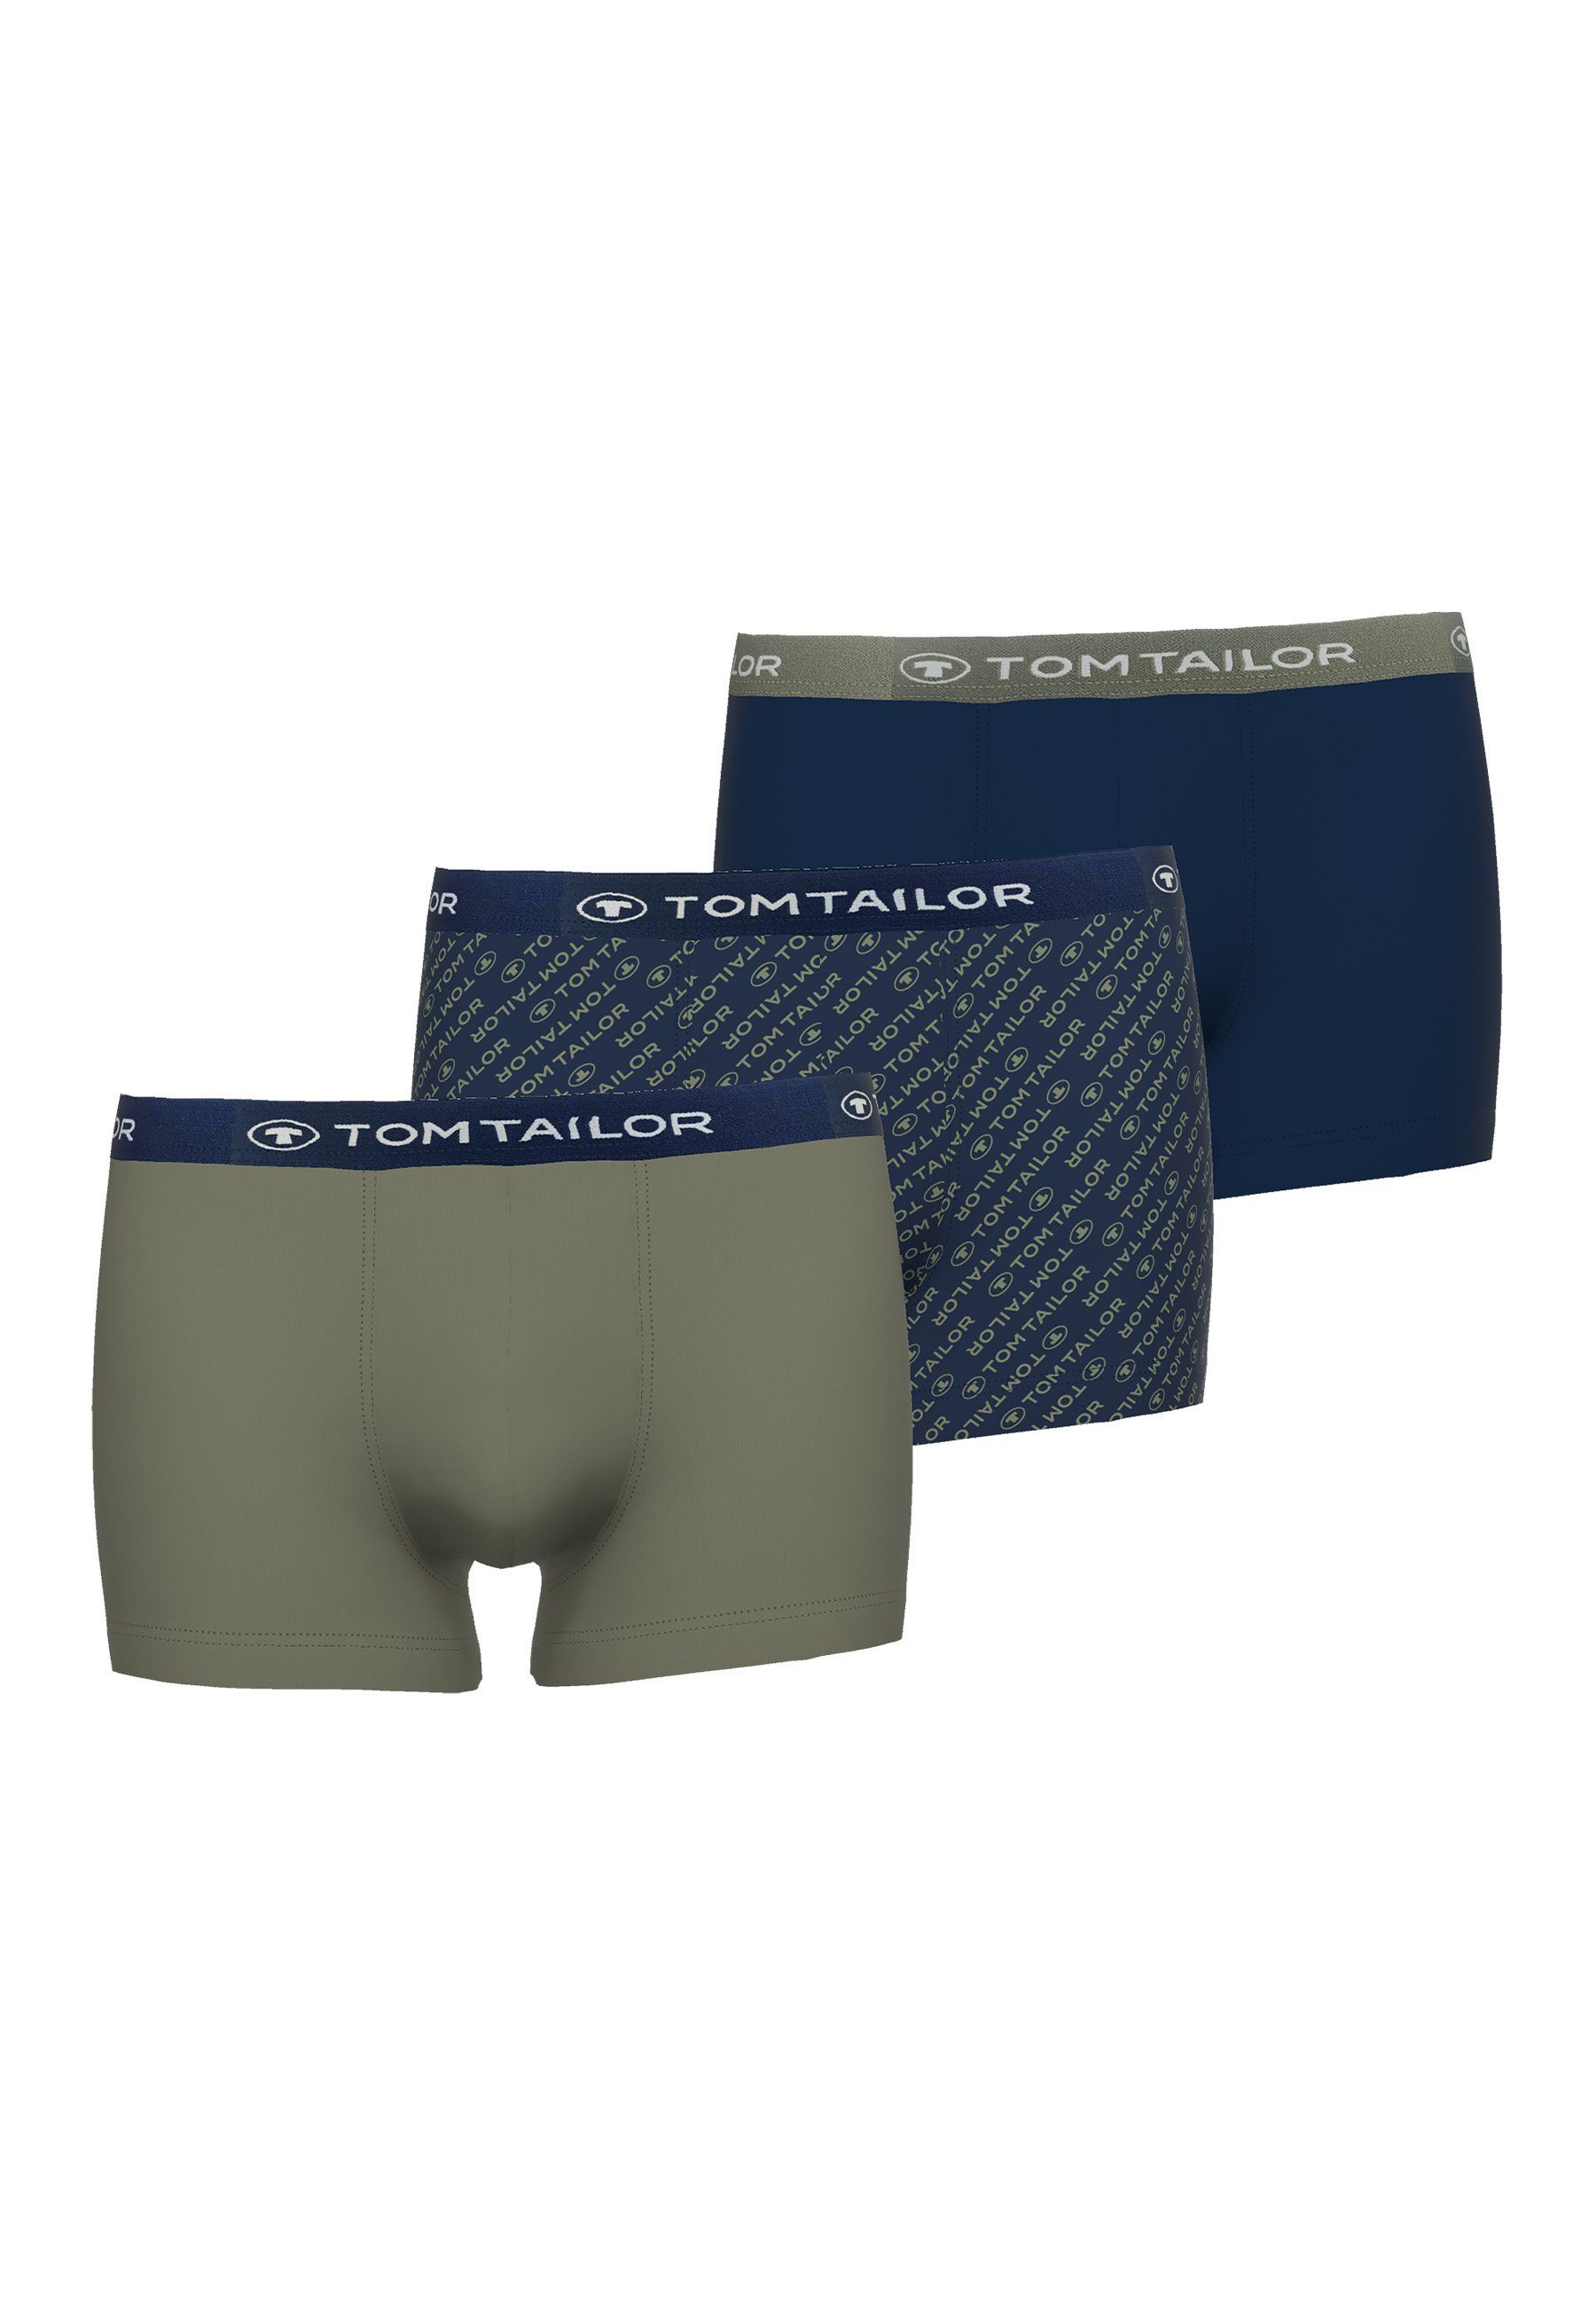 TOM TAILOR Boxershorts 3er TAILOR Pack Pants (3-St) TOM Hip blau-dunkel-Allover Herren bedruckt blau